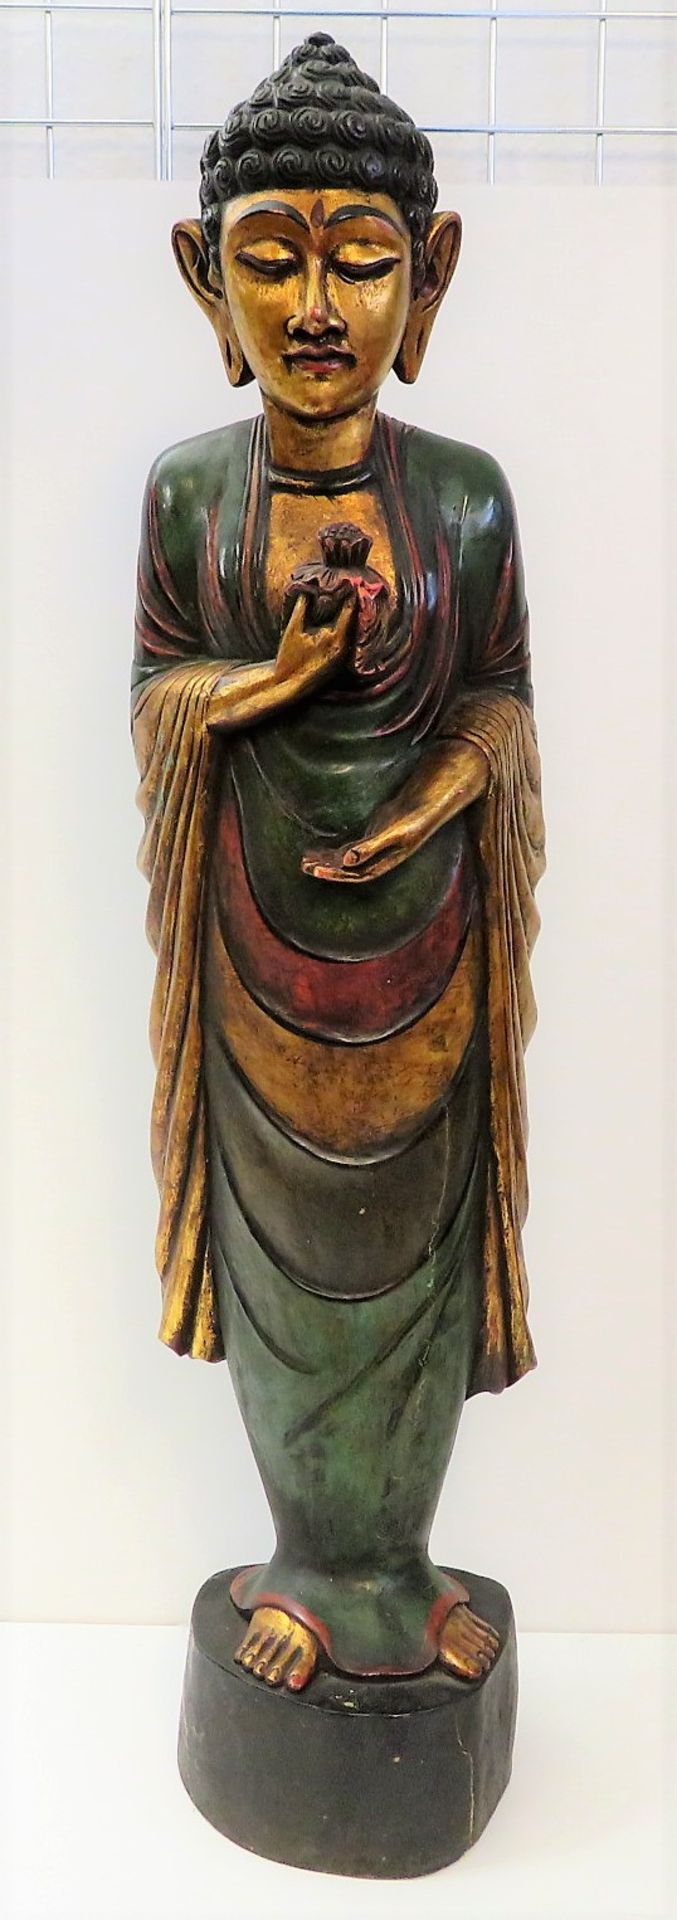 Stehende Buddhafigur, wohl Thailand, Holz geschnitzt, farbig gefasst und vergoldet, h 104 cm, d 26 